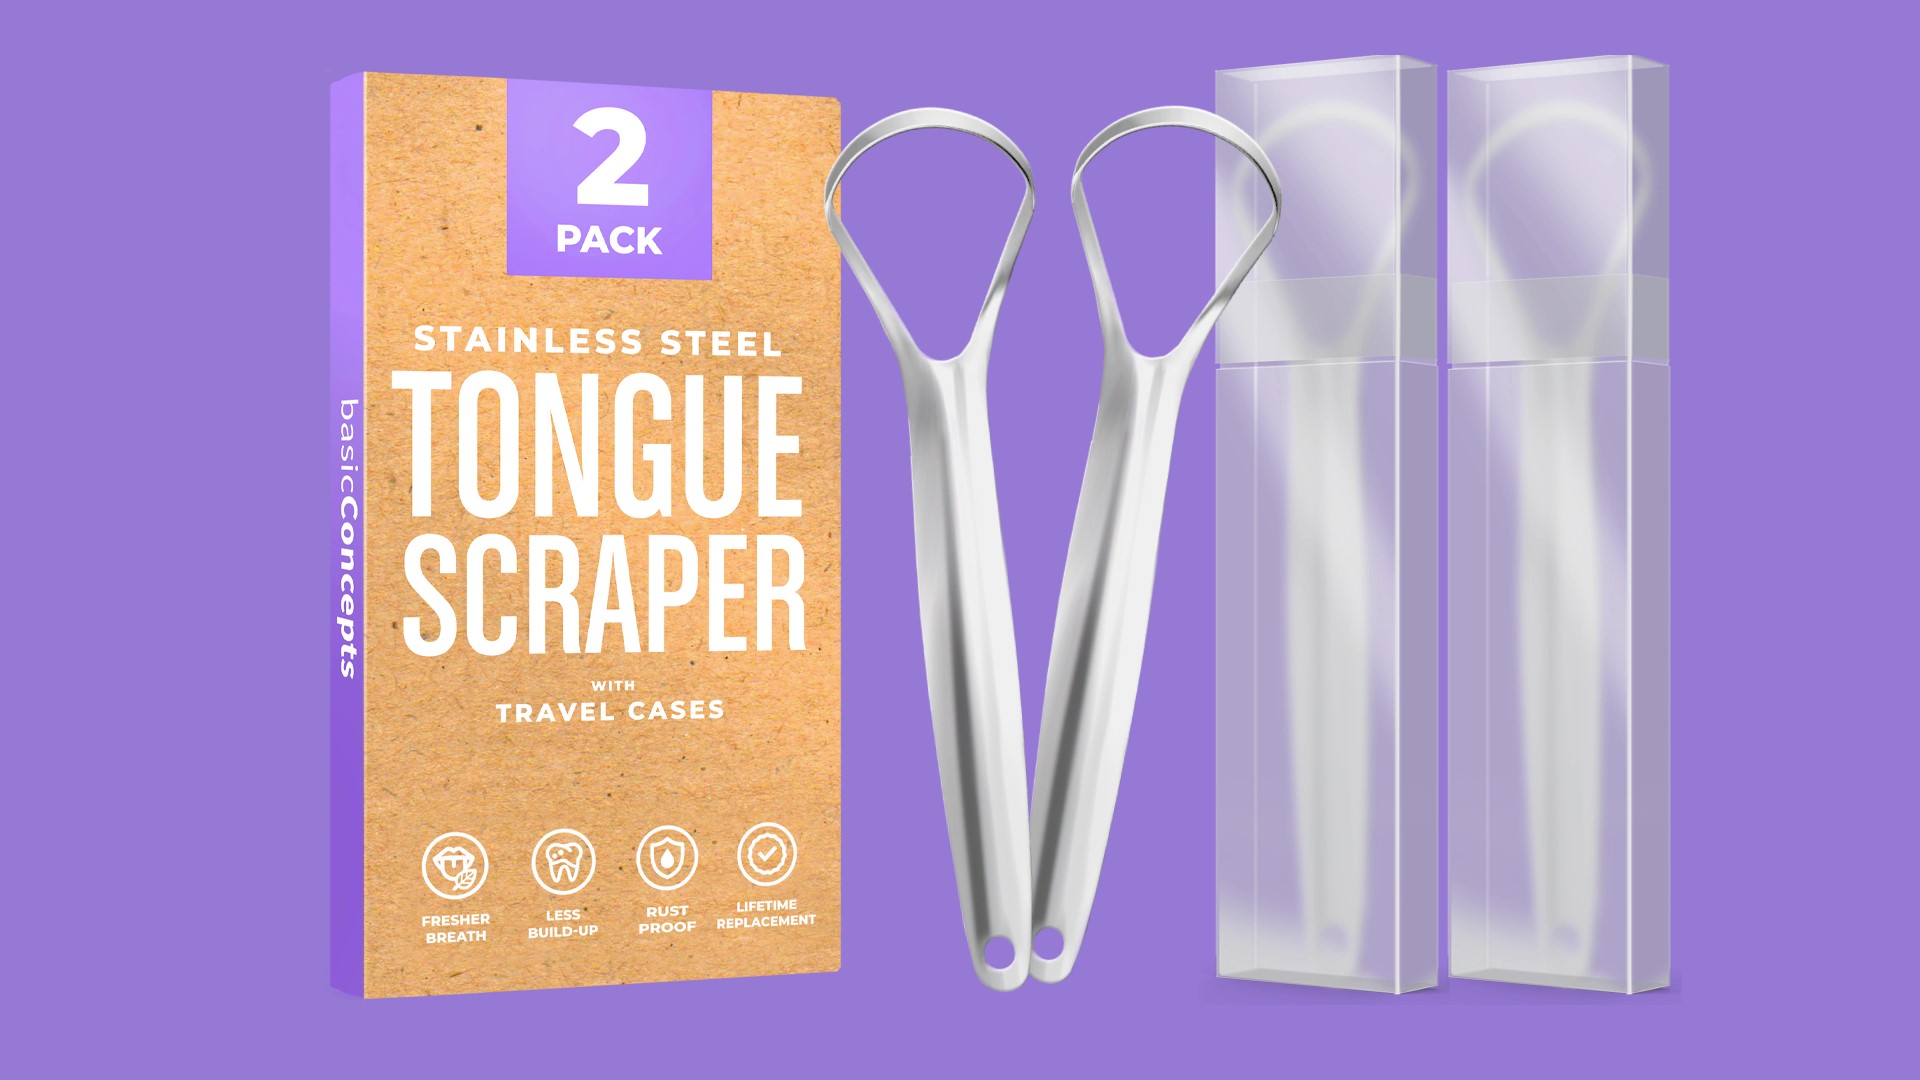 Tongue Scraper — basicConcepts